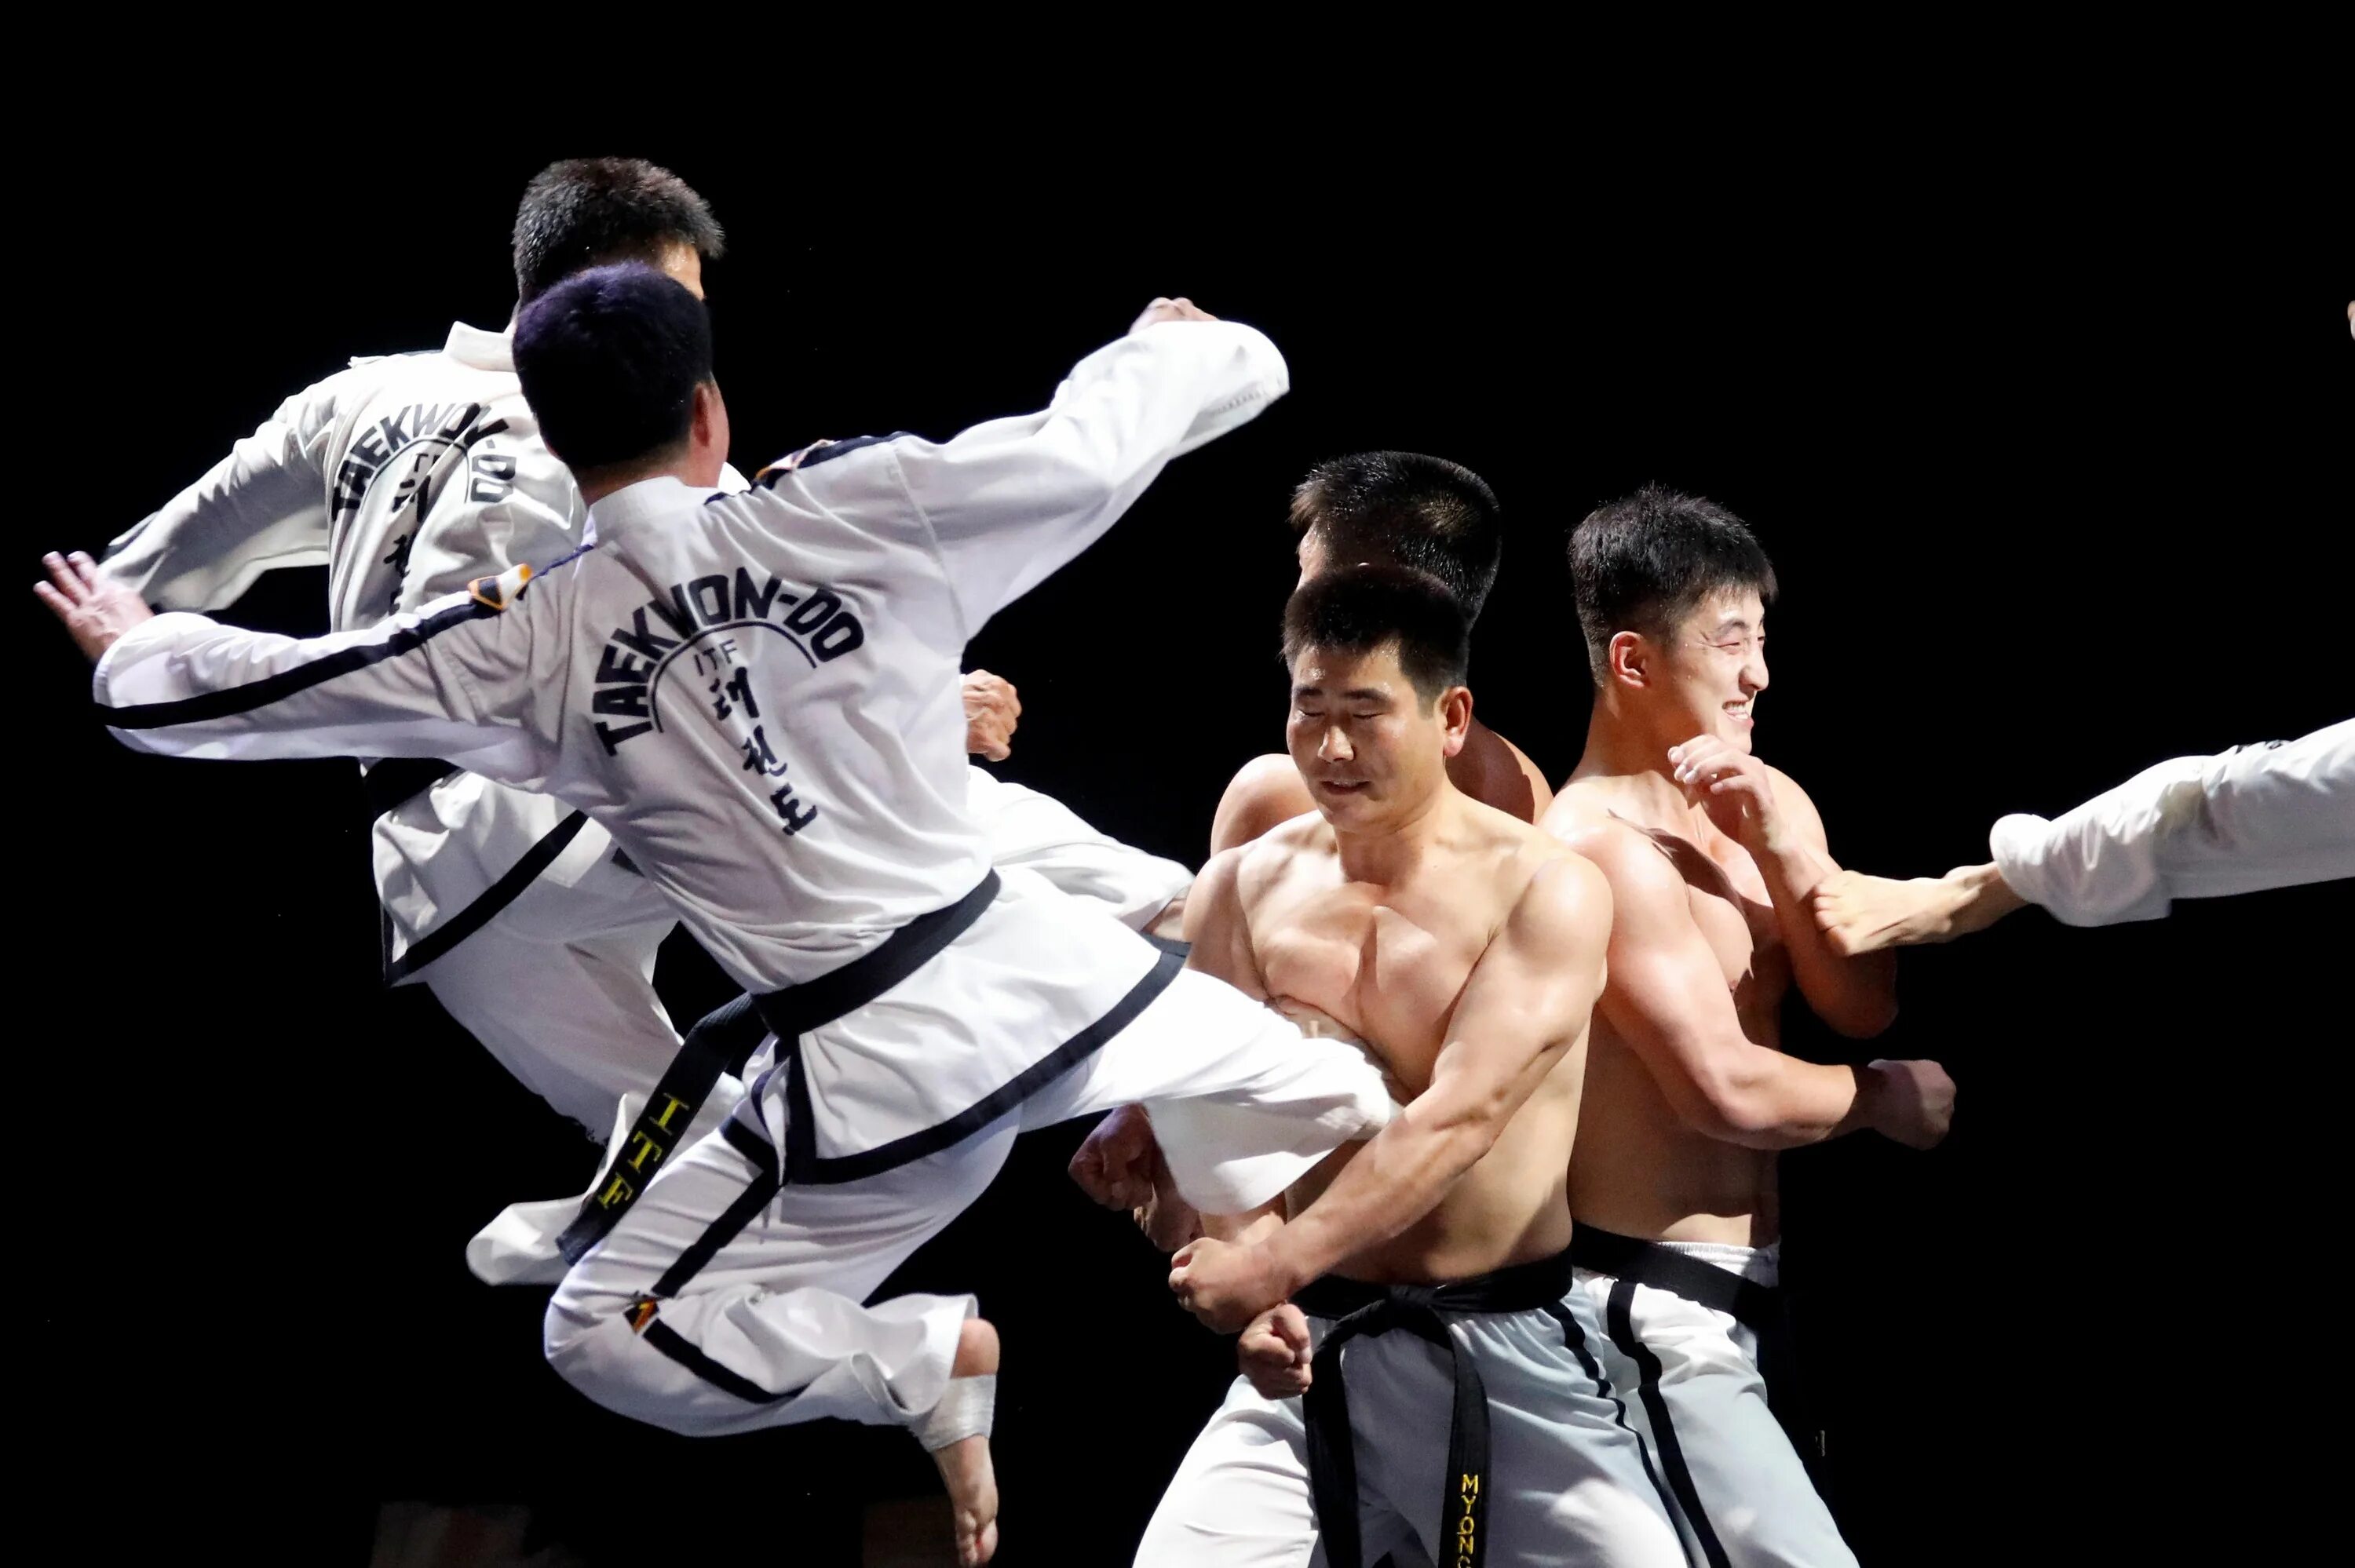 Taekwondo Северная Корея. Таэквондо ИТФ Корея. Таэквондо ИТФ Пхеньян. Северная Корея тхэквондо. Боевые искусства будущего 91